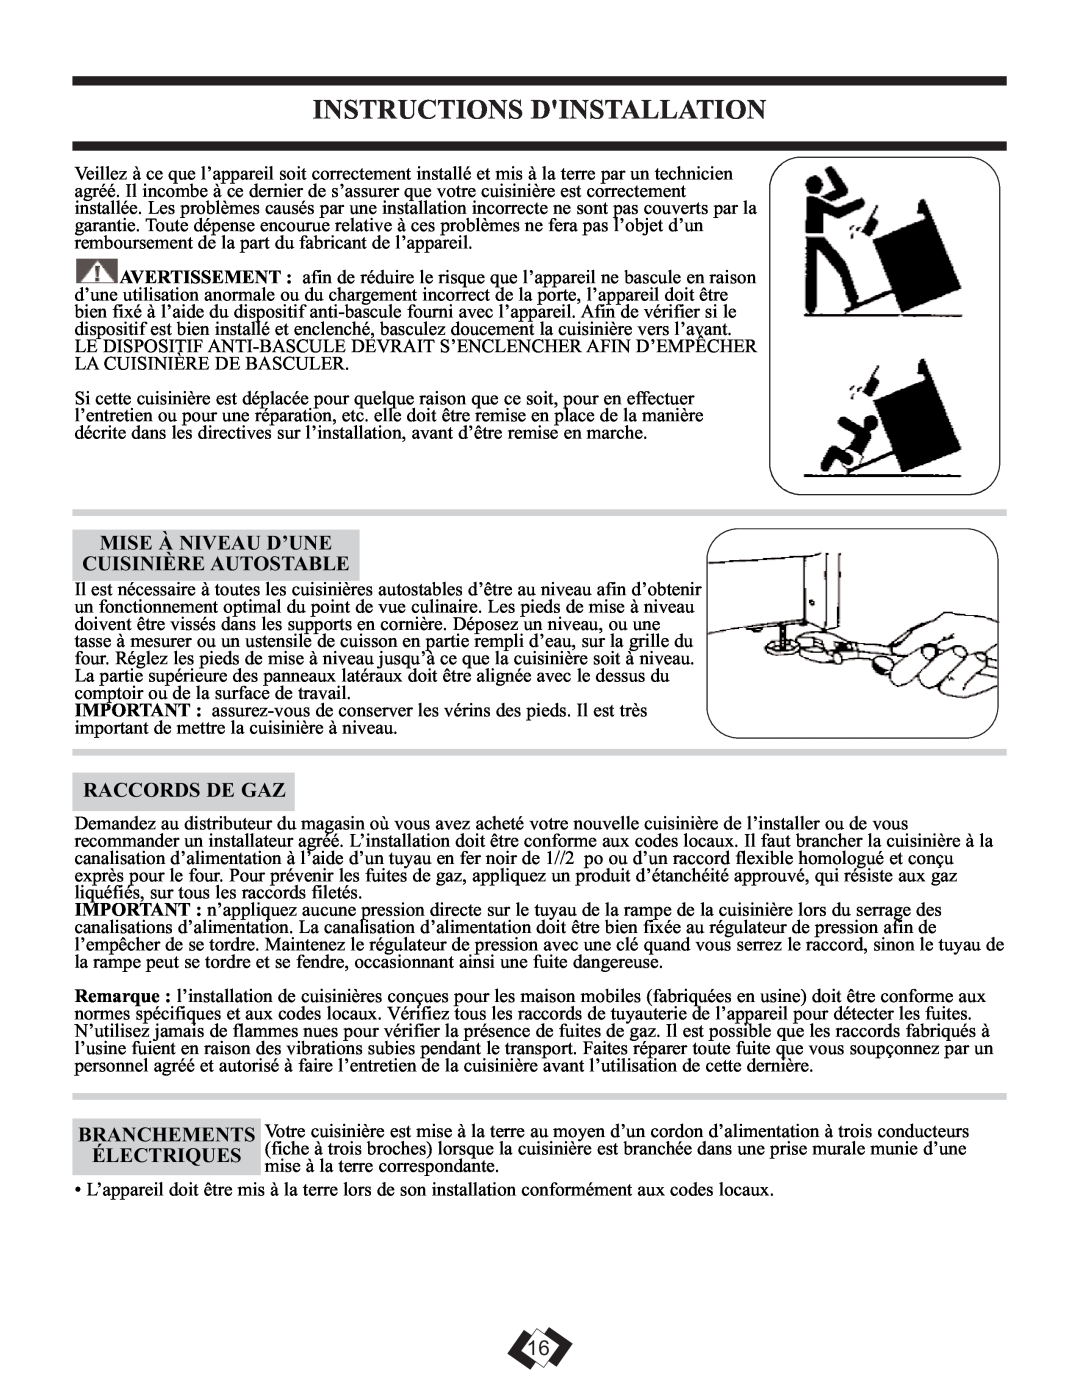 Danby DR2009WGLP Instructions Dinstallation, Mise À Niveau D’Une Cuisinière Autostable, Raccords De Gaz 